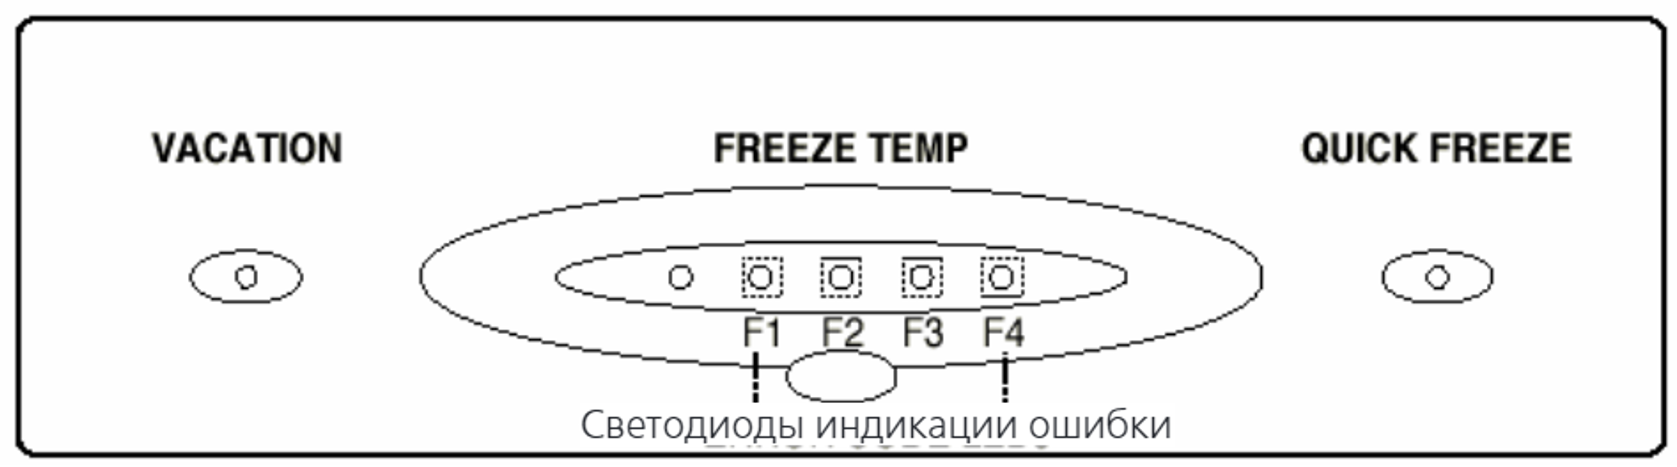 Холодильник LG gr 389sqf кнопка quick Freeze. Vacation и quick Freeze на холодильнике. Quick Freeze на холодильнике LG. Холодильник LG индикаторы управления.